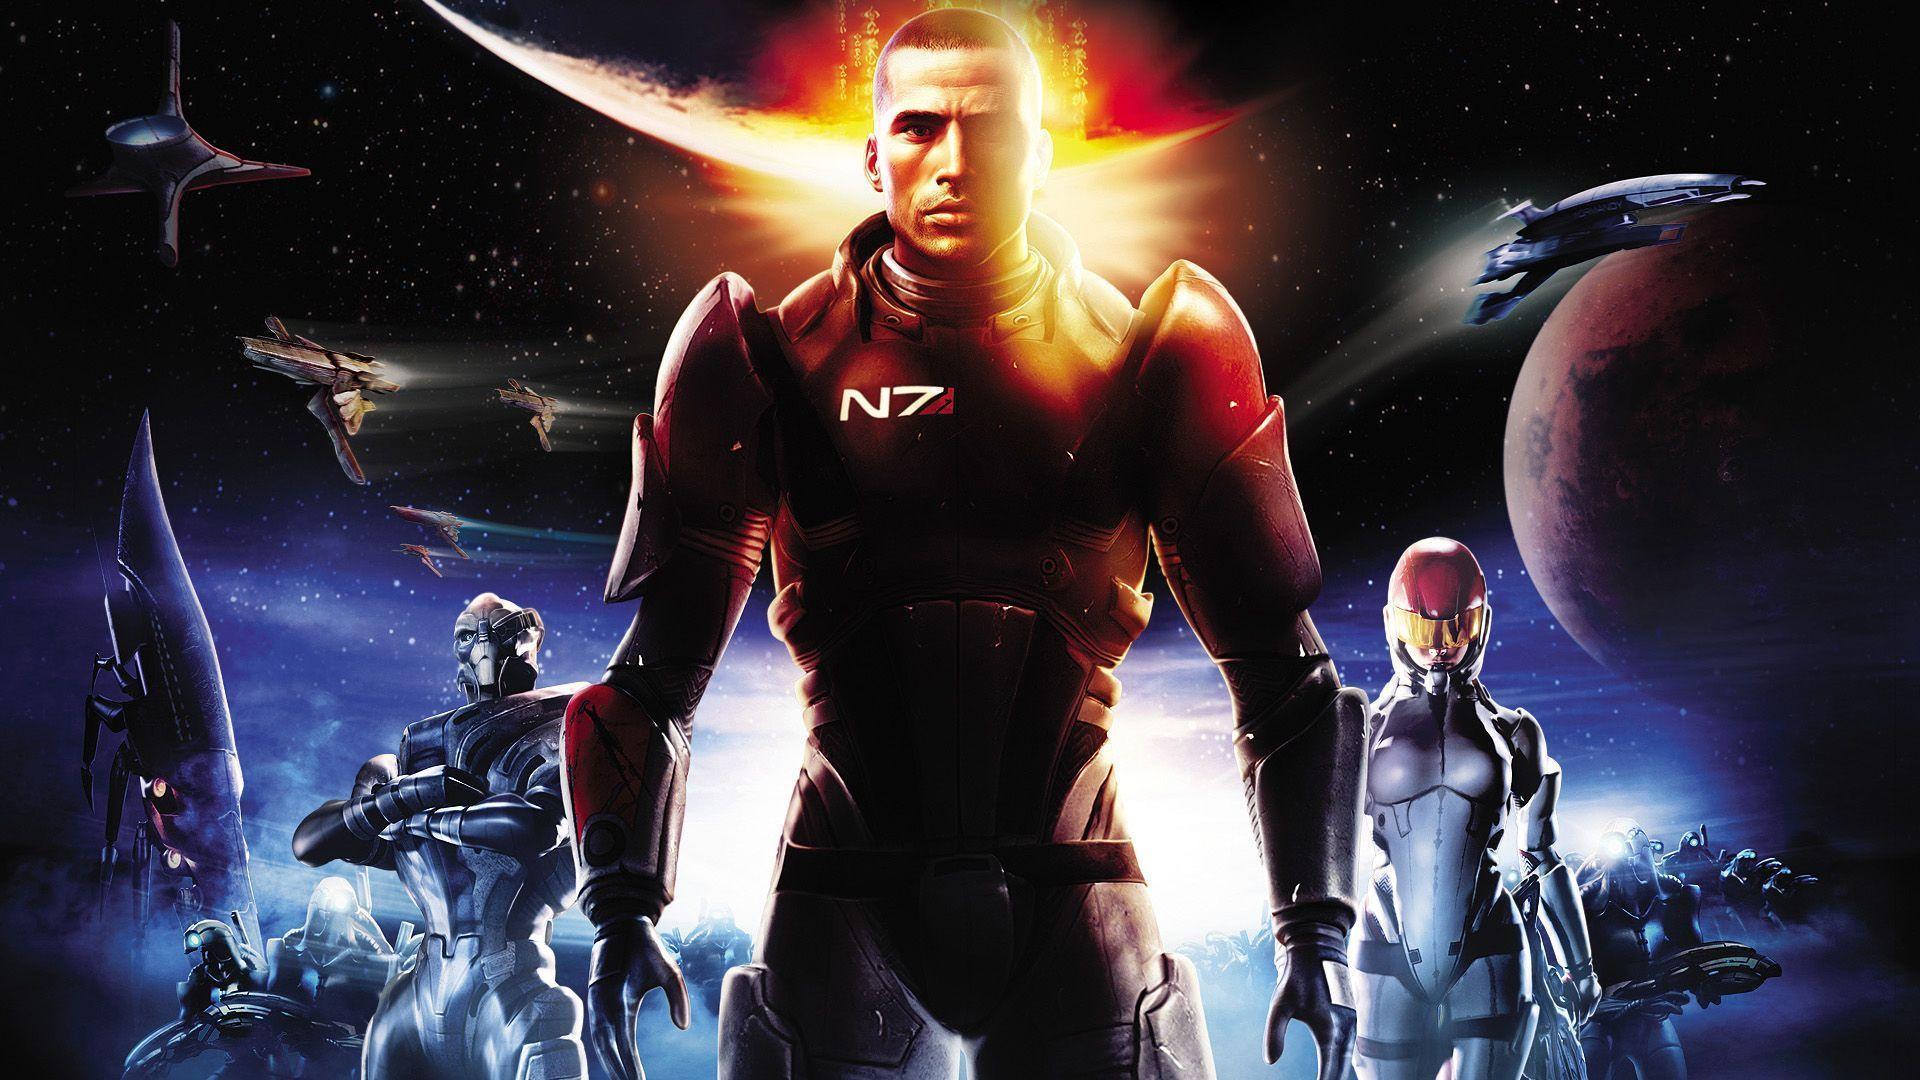 Mass Effect Computer Wallpaper, Desktop Background 1920x1080 Id